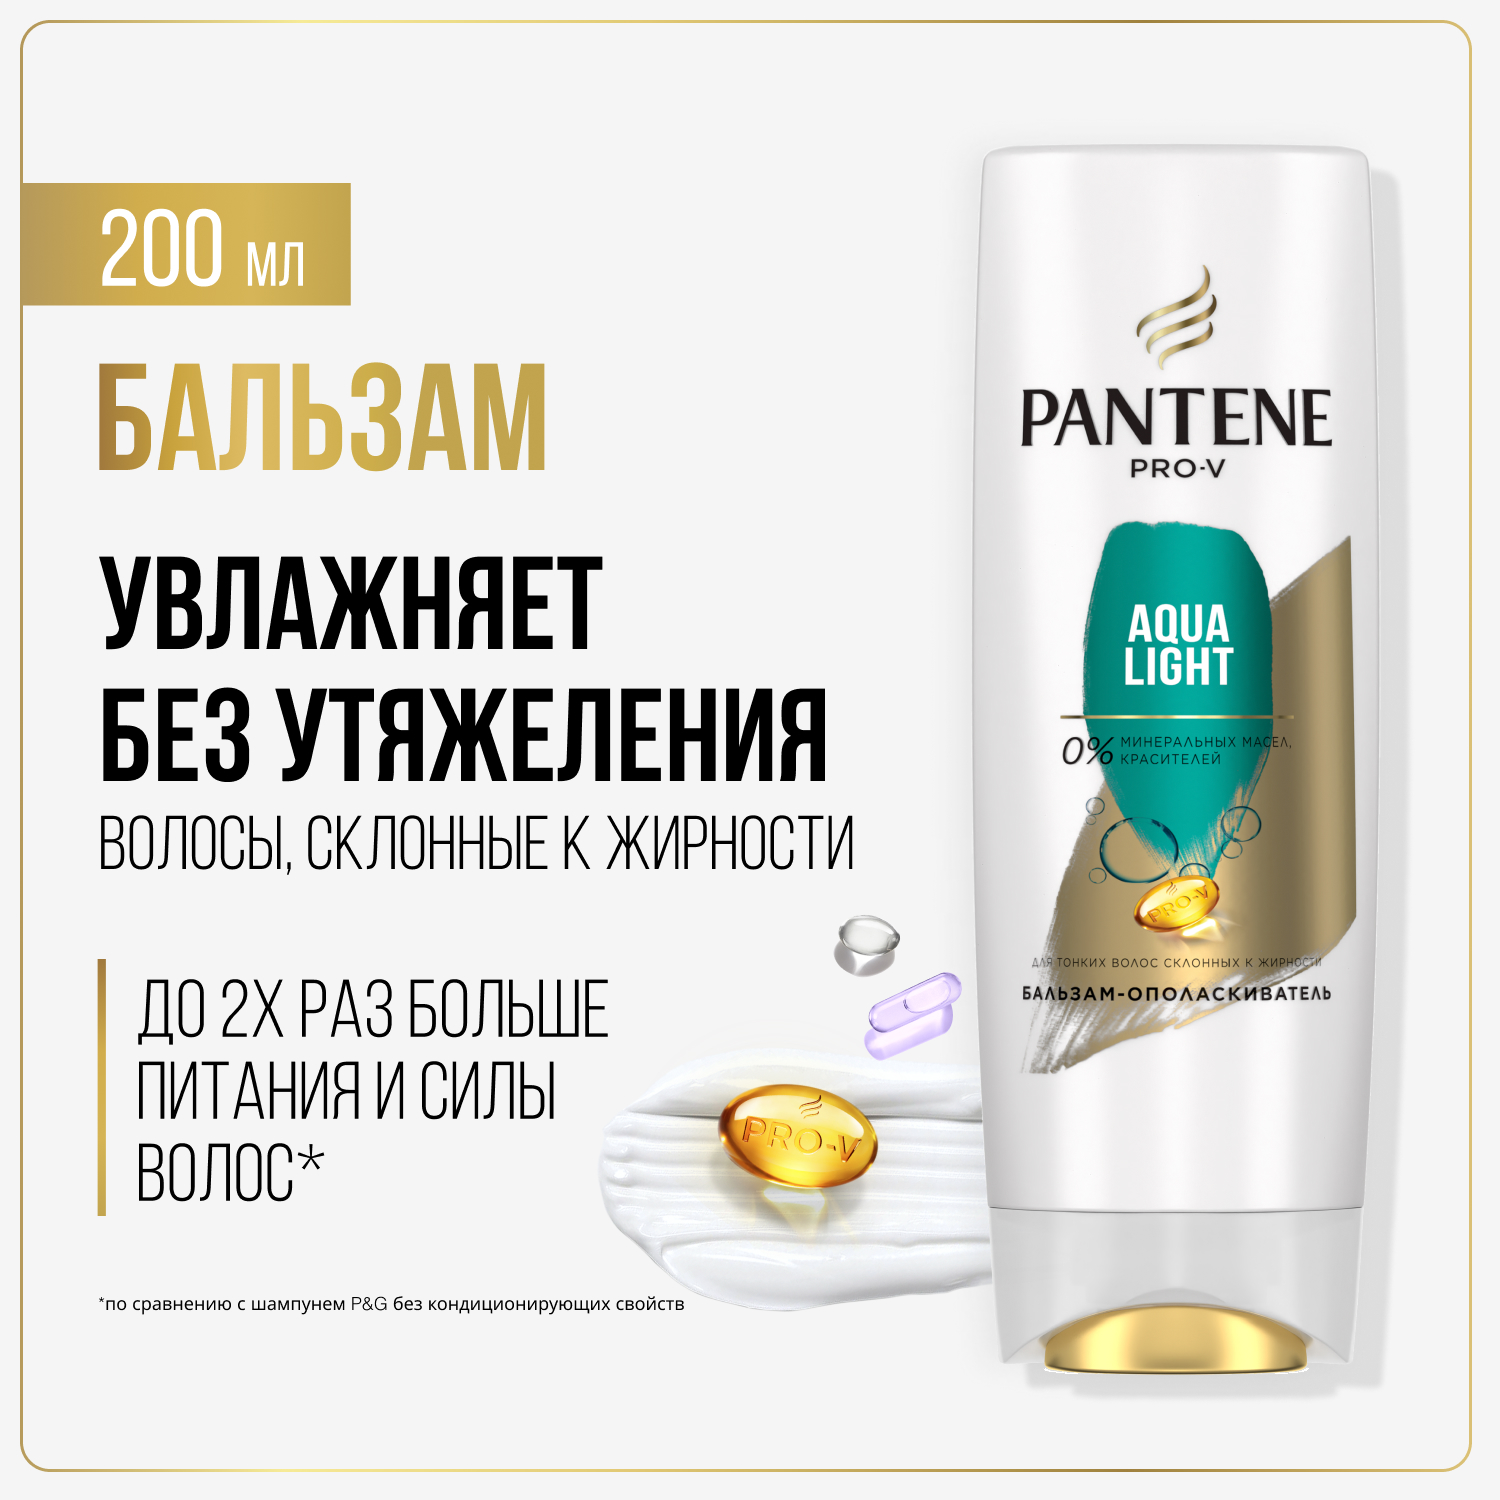 Бальзам для волос Pantene Aqua Light легкий, питательный и укрепляющий 200 мл wella professionals бальзам обновляющий легкий elements 30 мл